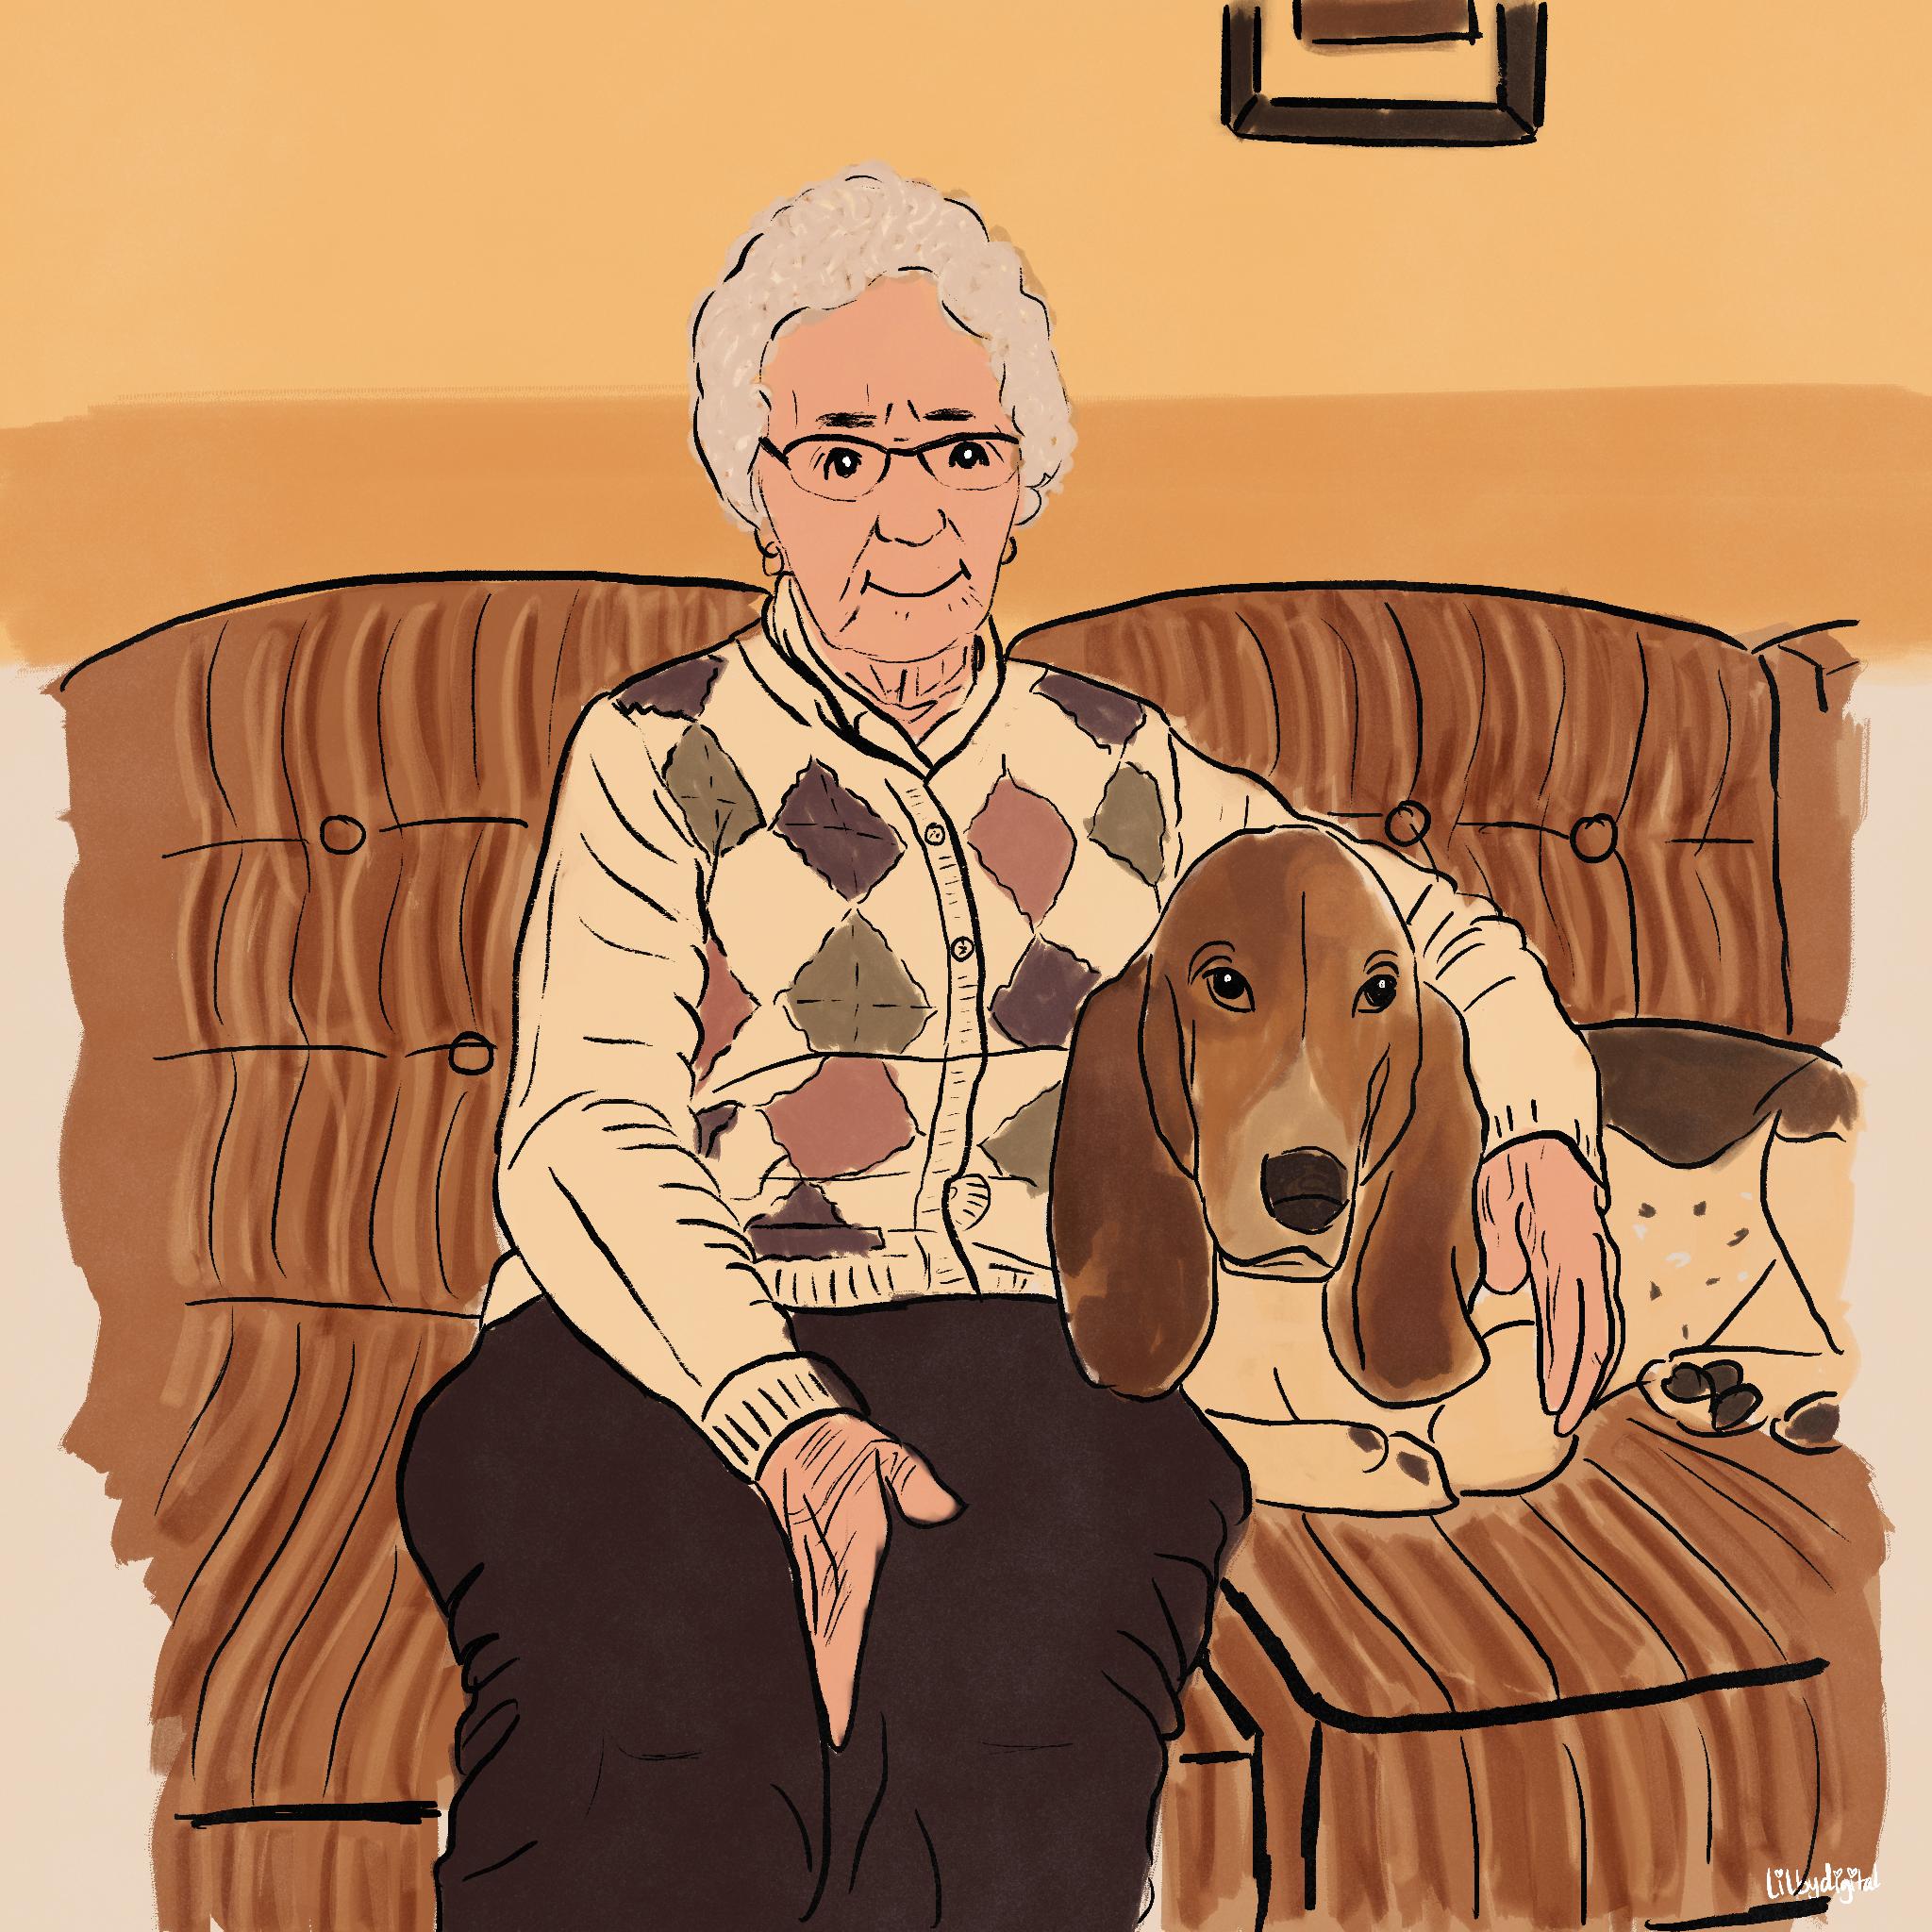 Sweet grandma and her dog.